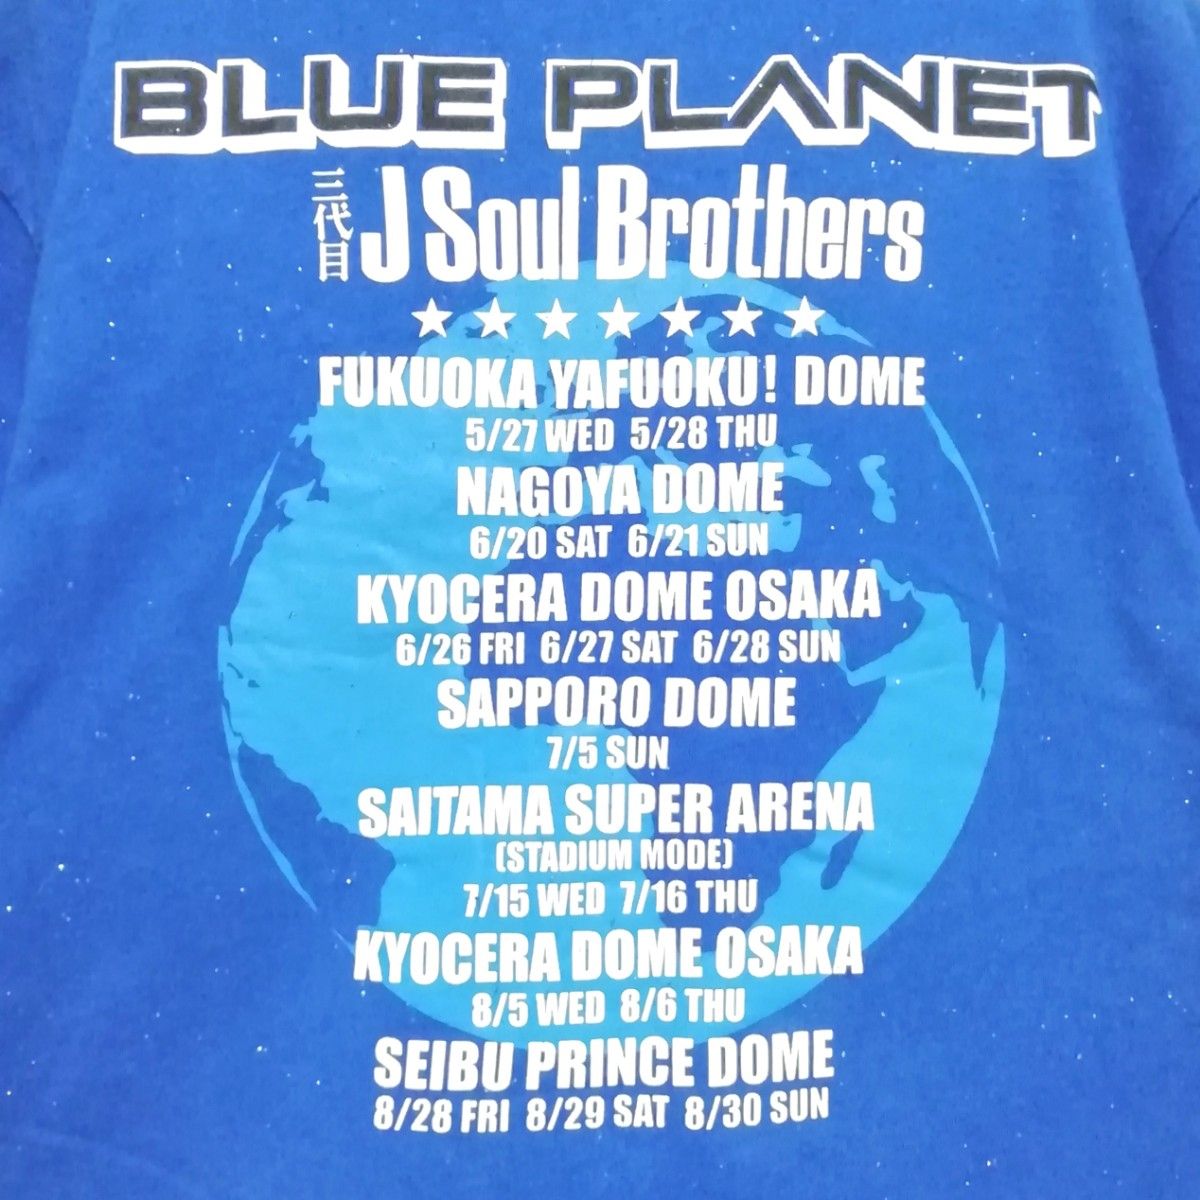 ライブTシャツ【S】レディース【三代目 J SOUL BROTHERS】LIVETOUR2015【BLUE PLANET】匿名配送